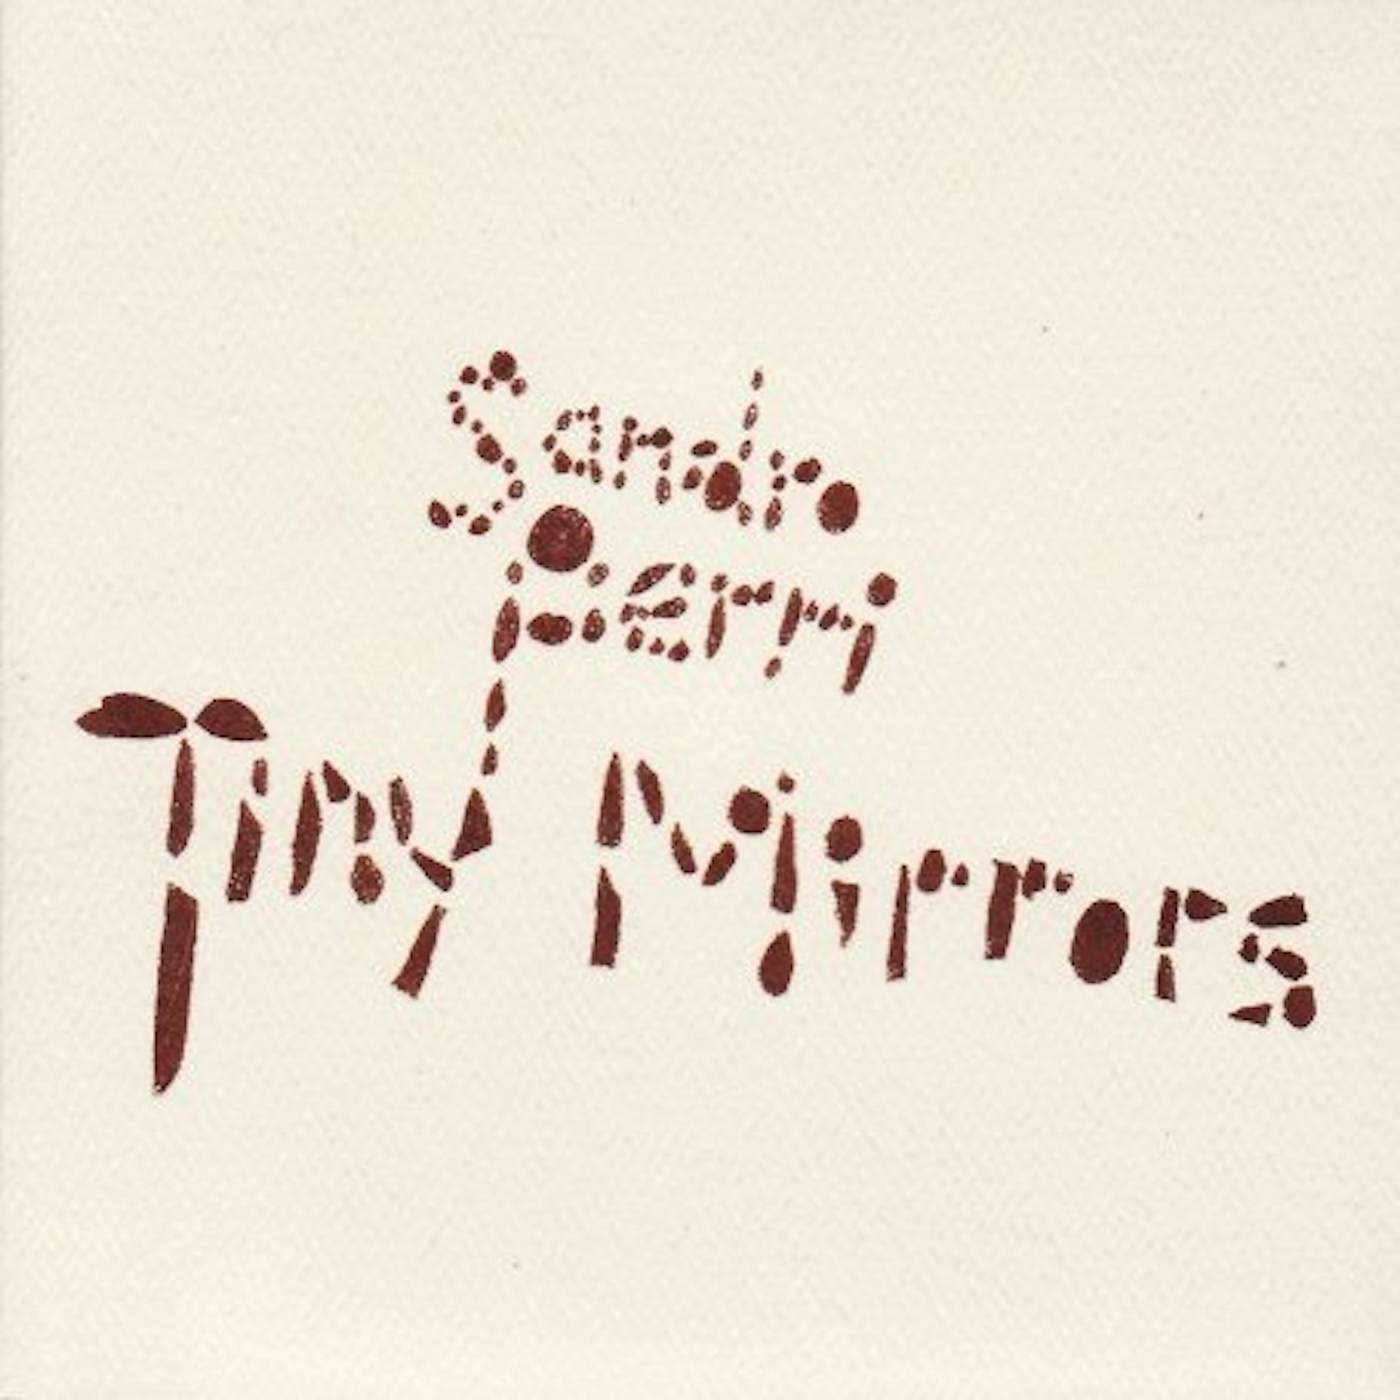 Sandro Perri Tiny Mirrors Vinyl Record